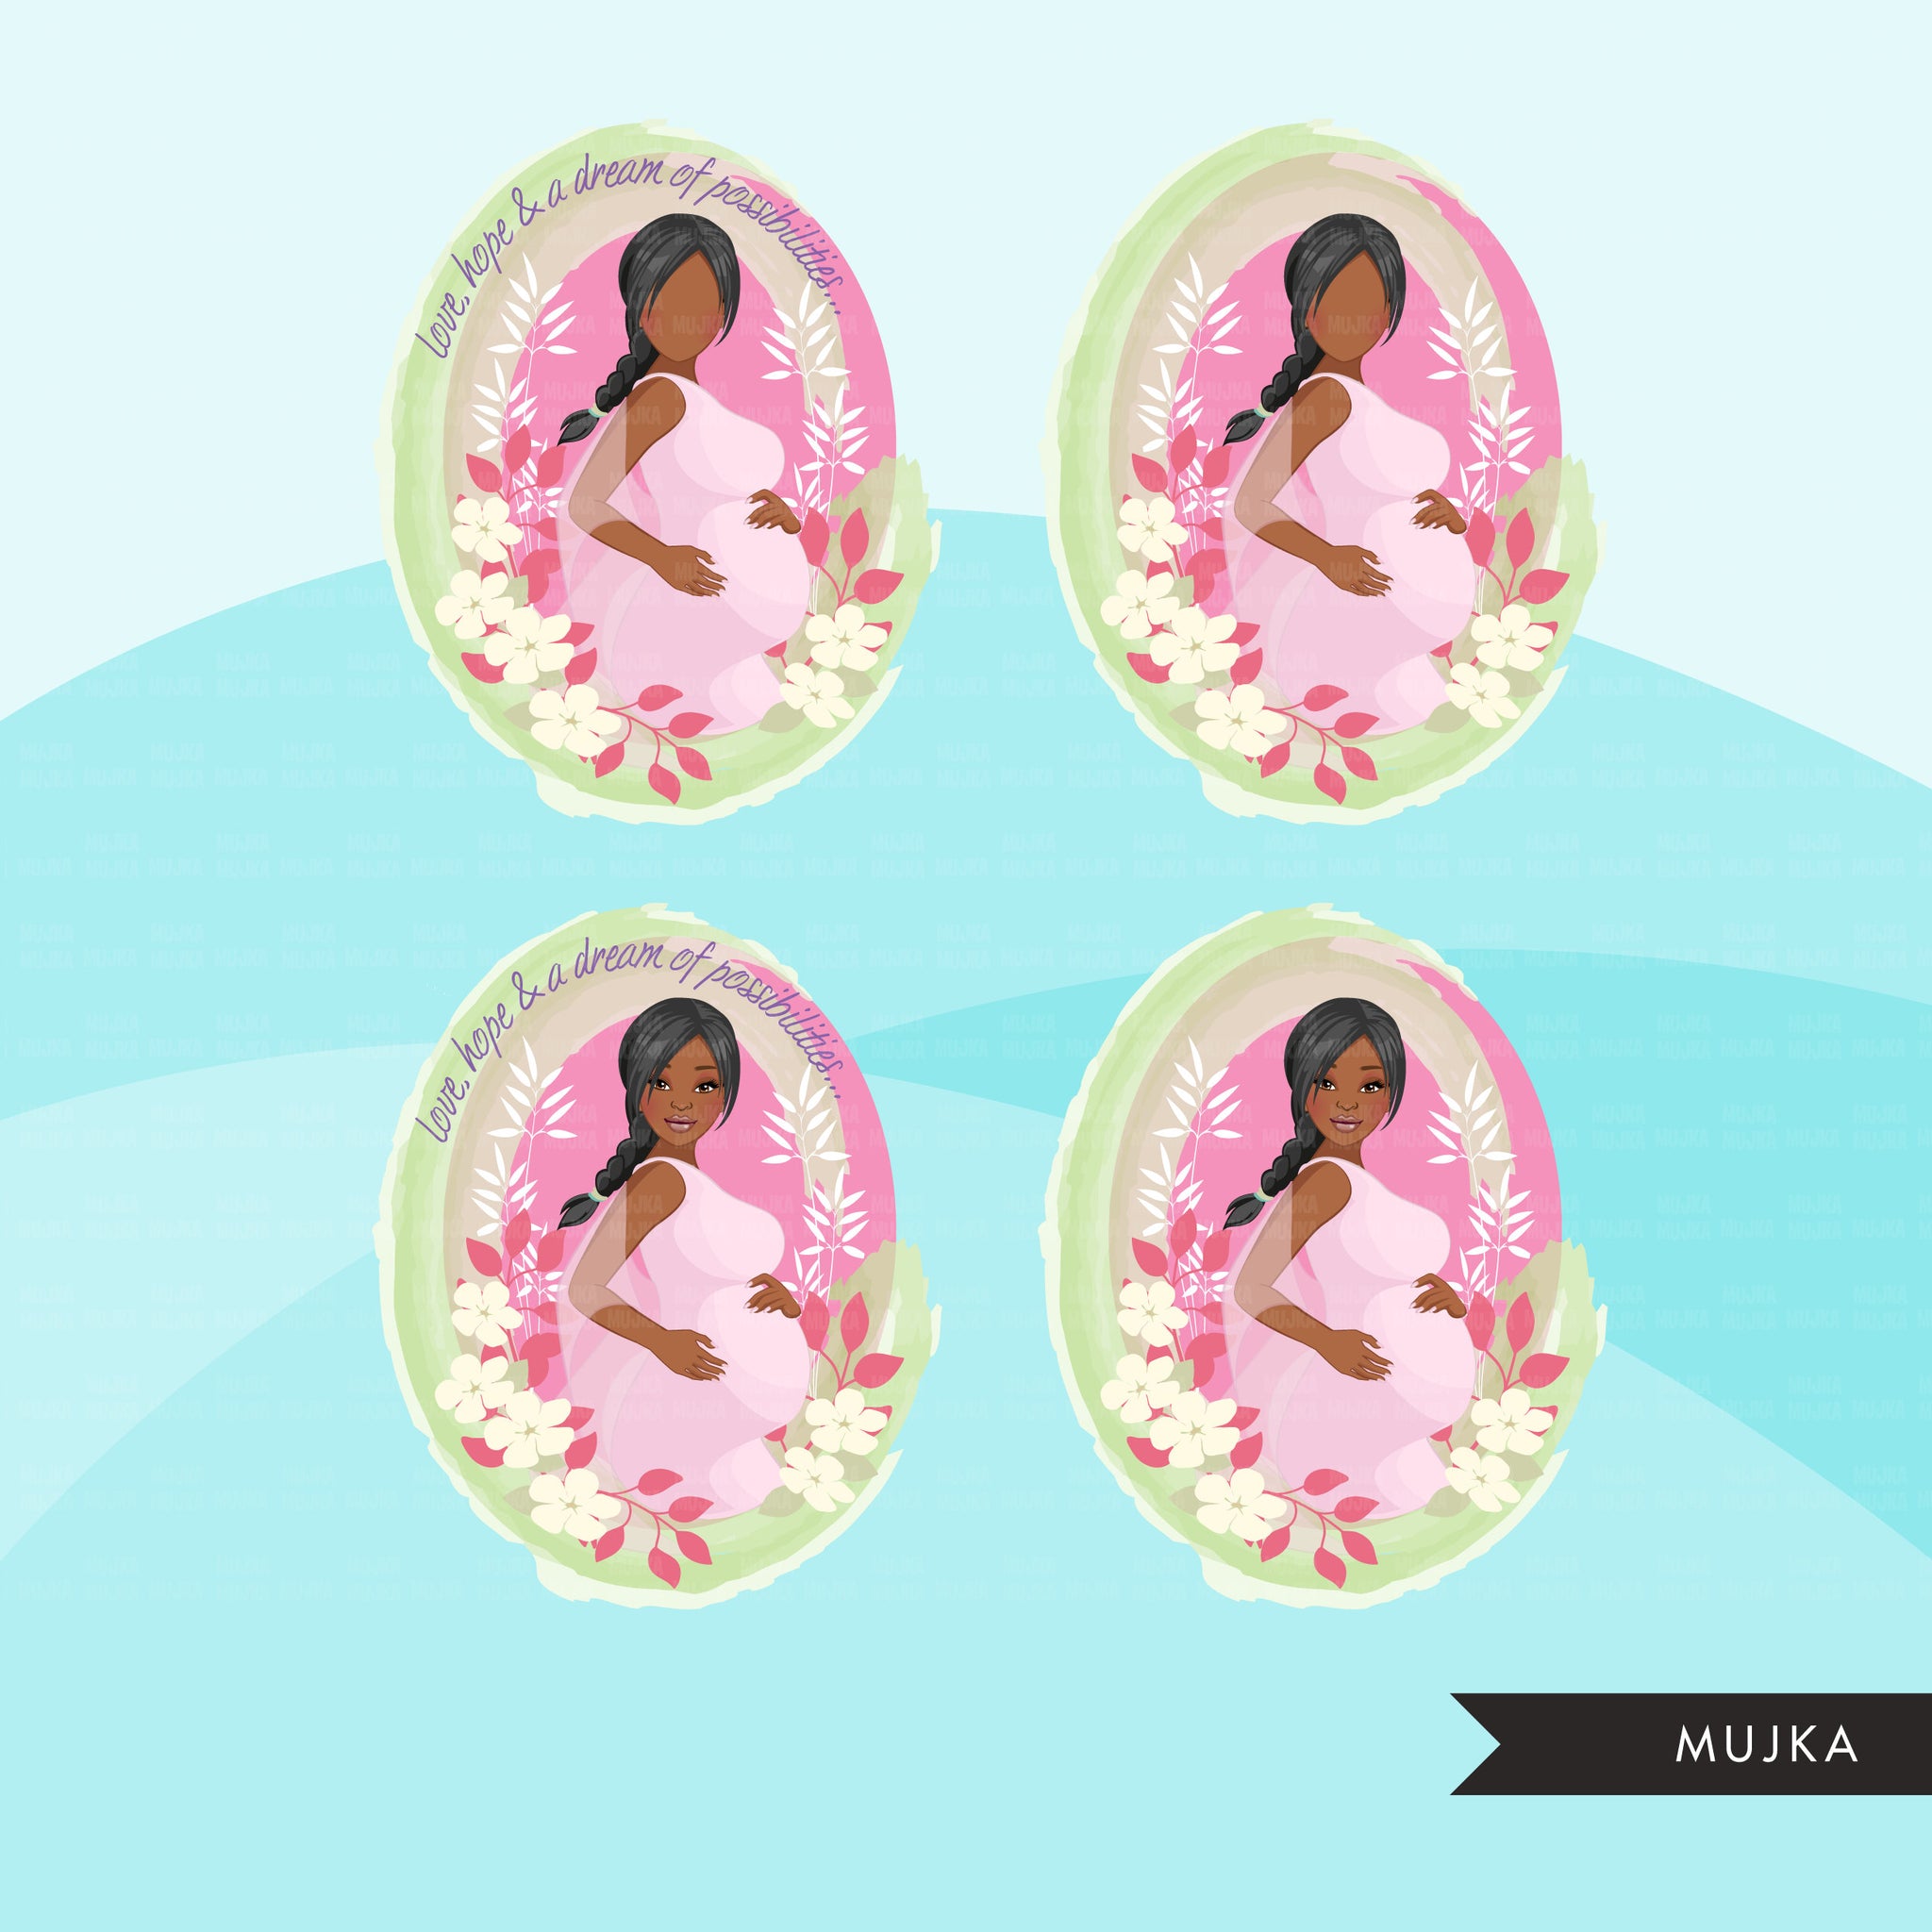 Clipart do Dia das Mães, download digital de designs de sublimação do dia das mães, lembrancinhas para chá de bebê, arte de parede, tranças de mulher negra grávida png